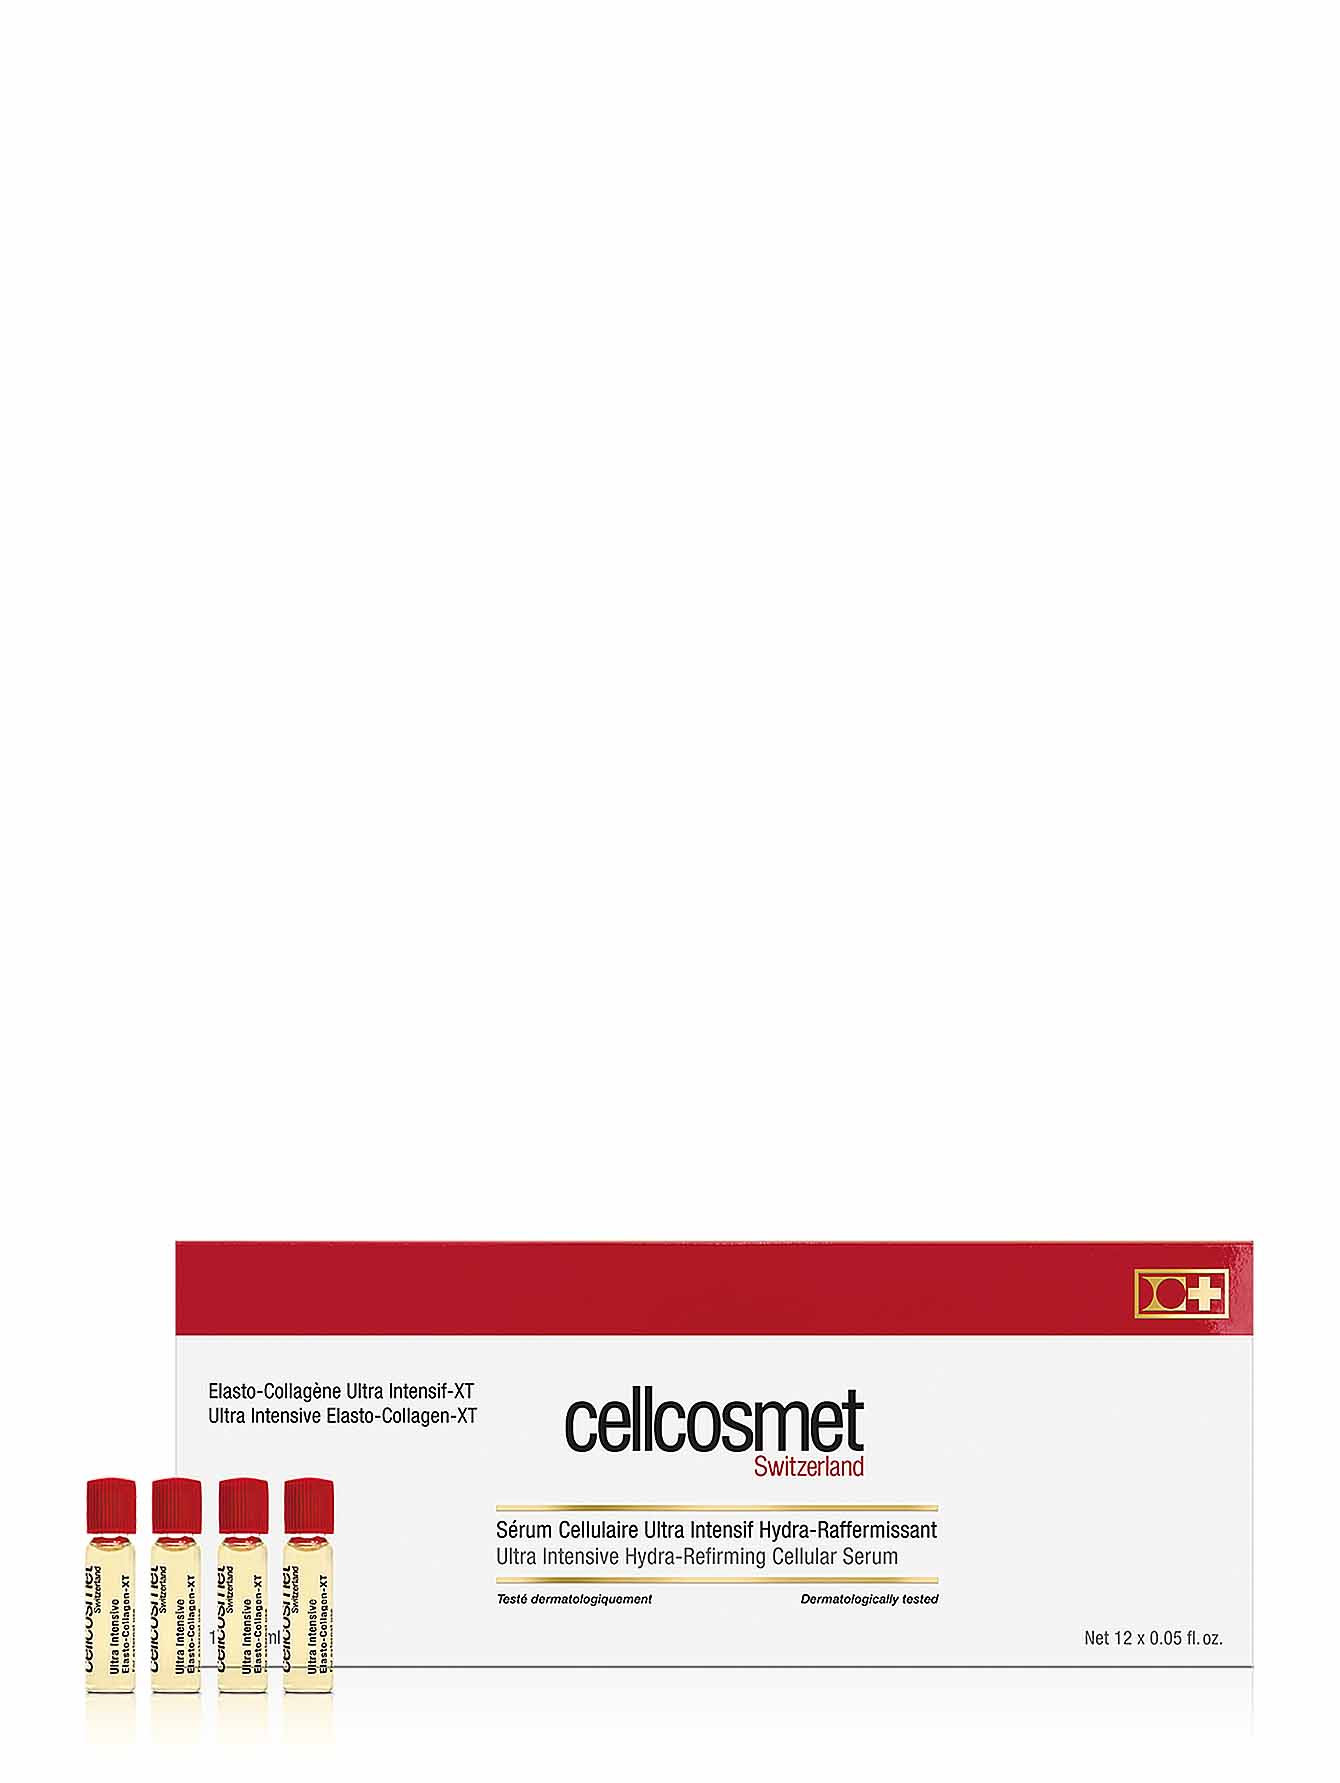  Клеточная сыворотка - Ultra intensive elasto-collagen, 12x1,5ml - Общий вид